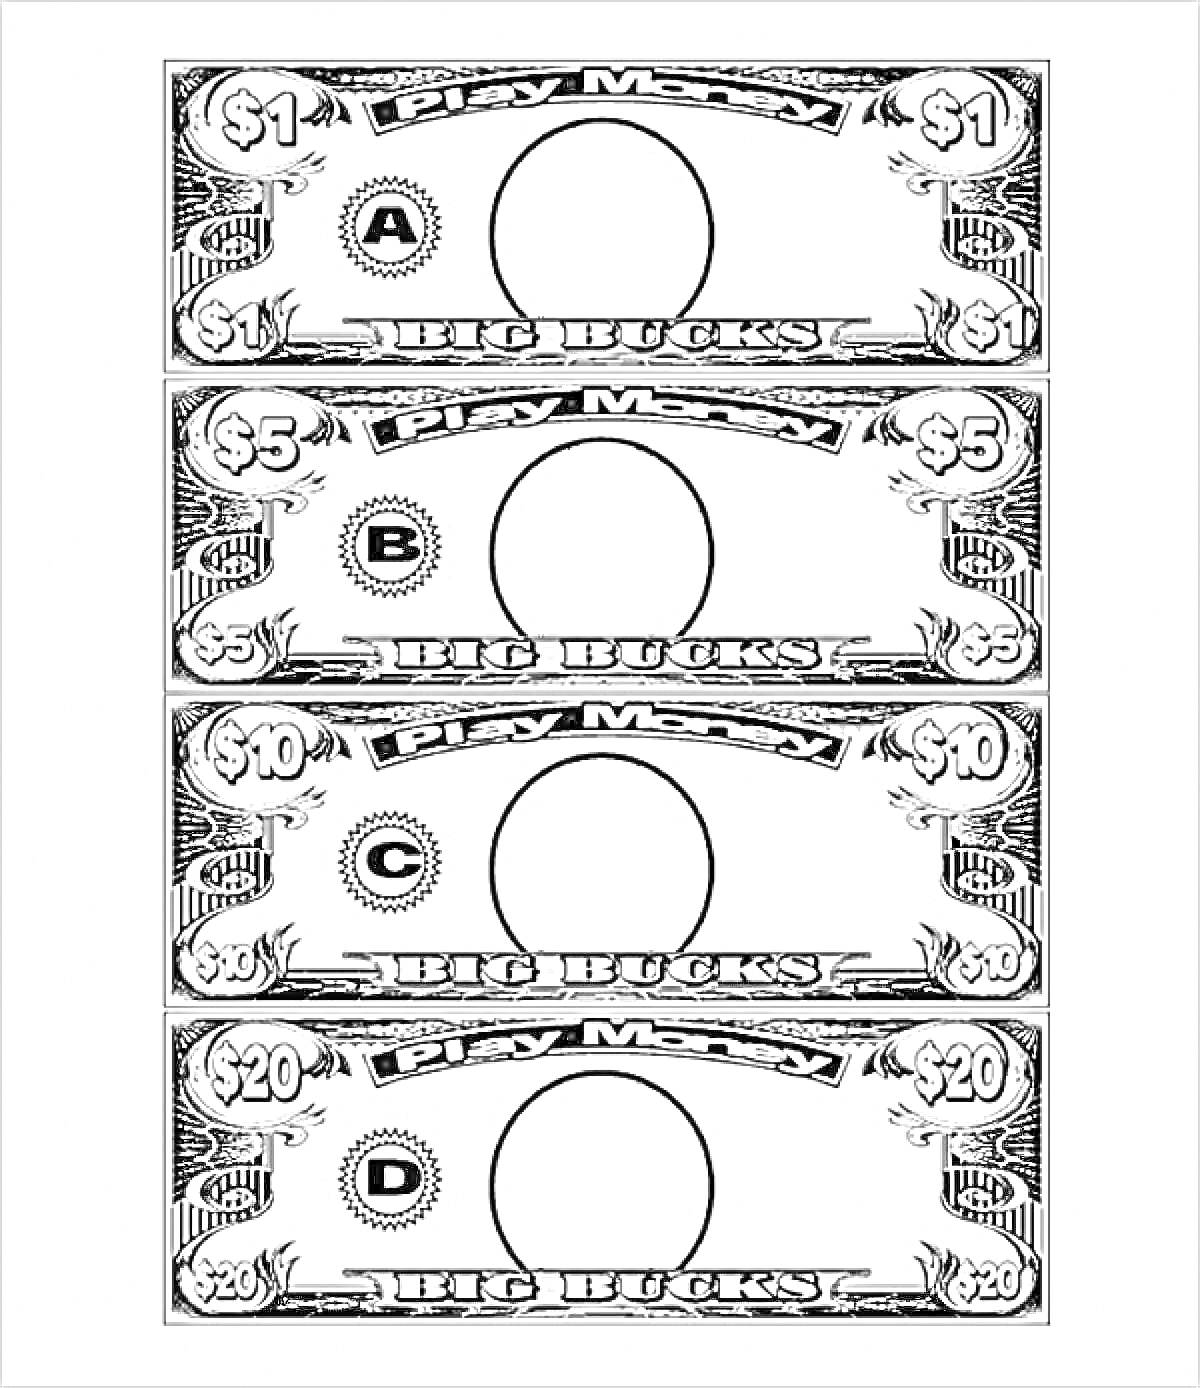 Детские игровые деньги с номиналом $1, $5, $10 и $20, с буквами A, B, C и D в центральных кругах для добавления портрета.